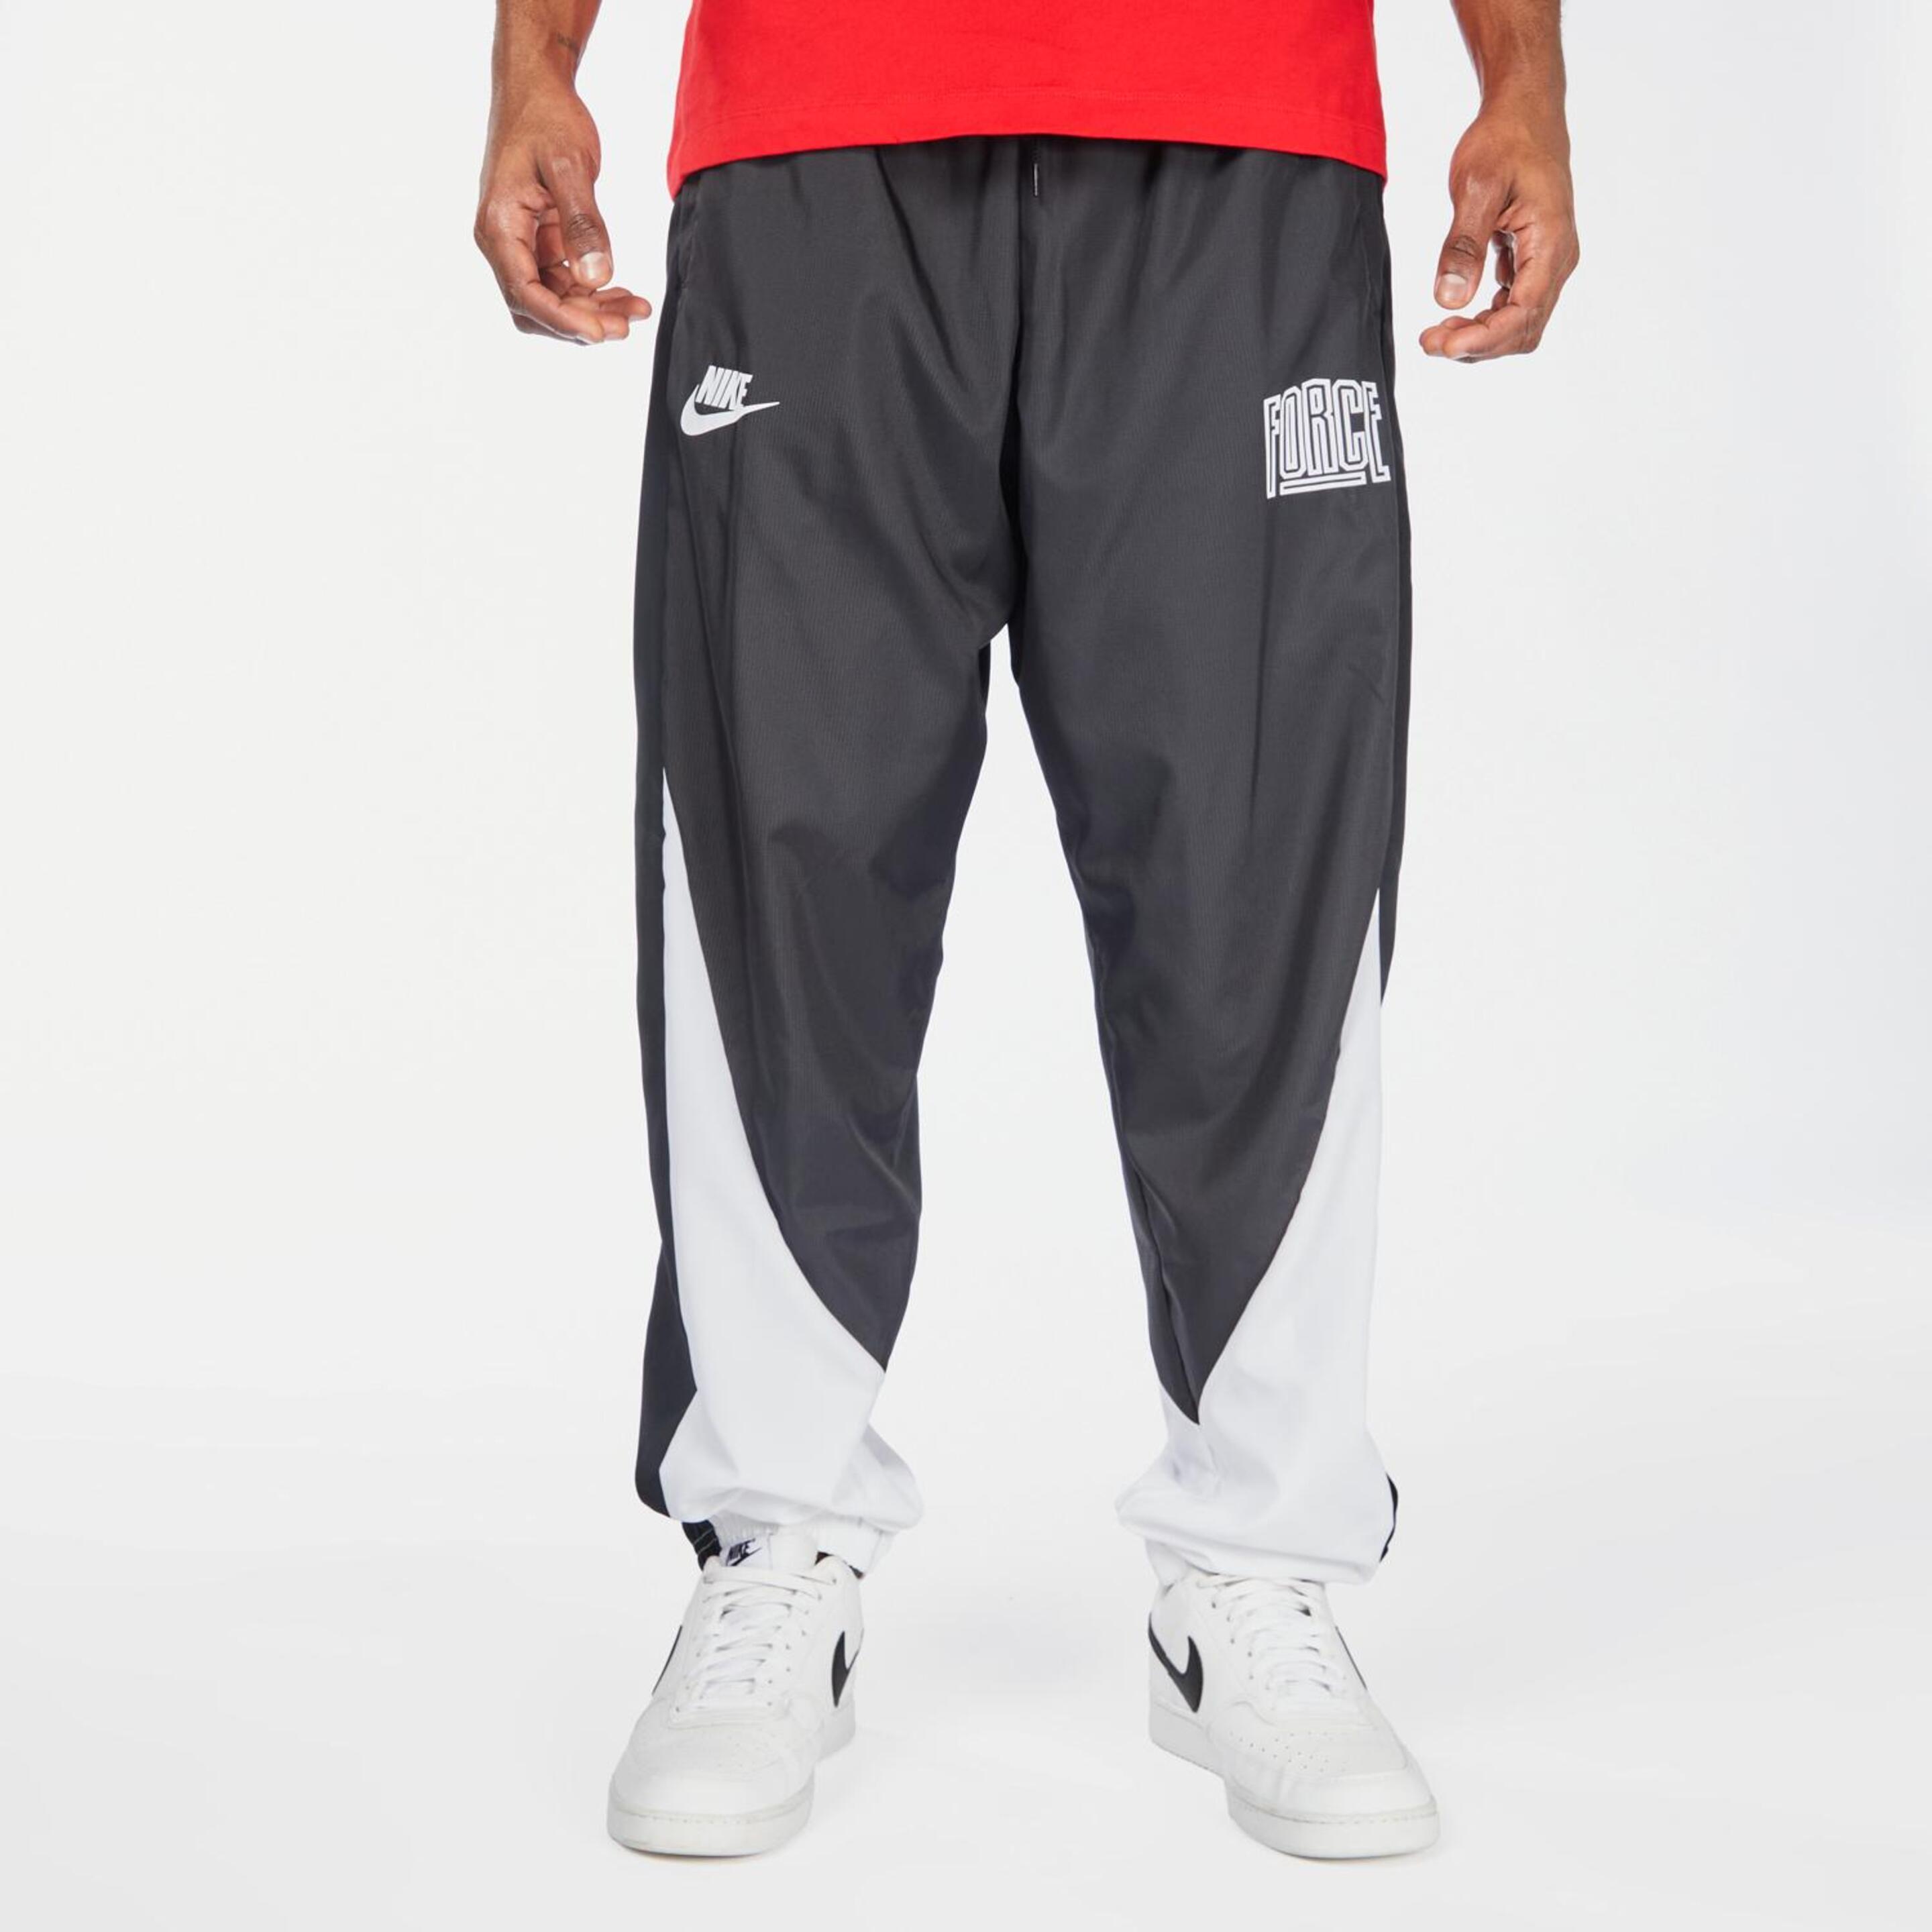 Nike Starting 5 - negro - Pantalón Baloncesto Hombre